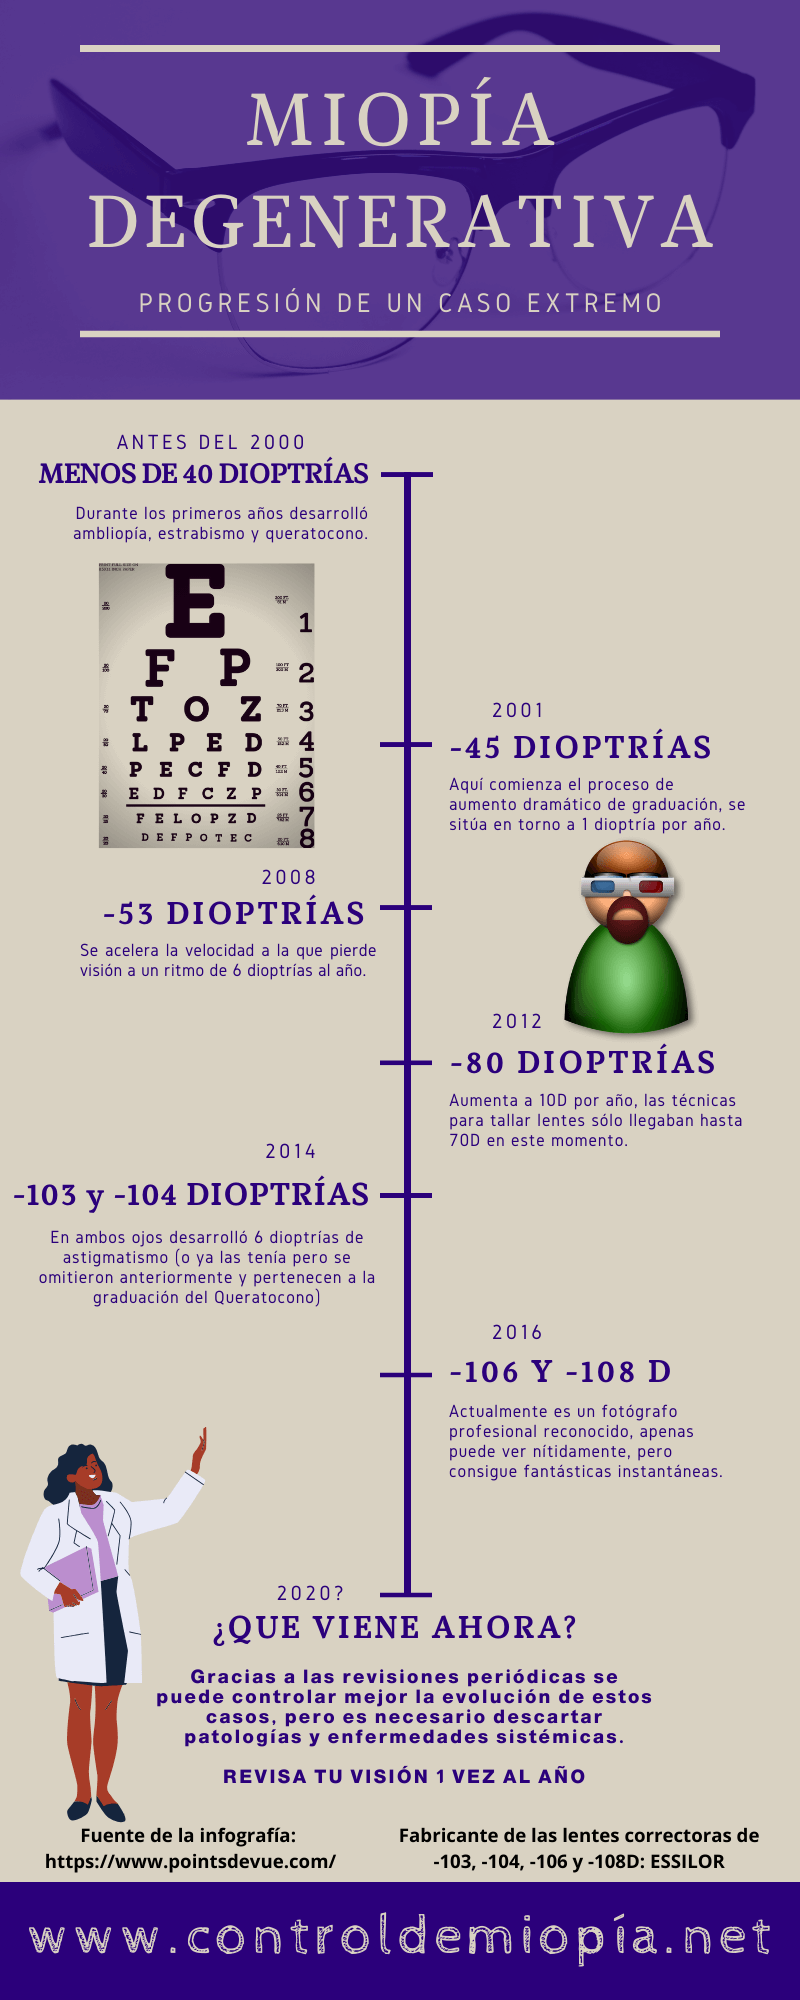 miopia degenerativa tratamiento con gafas en 2020 record de miopia